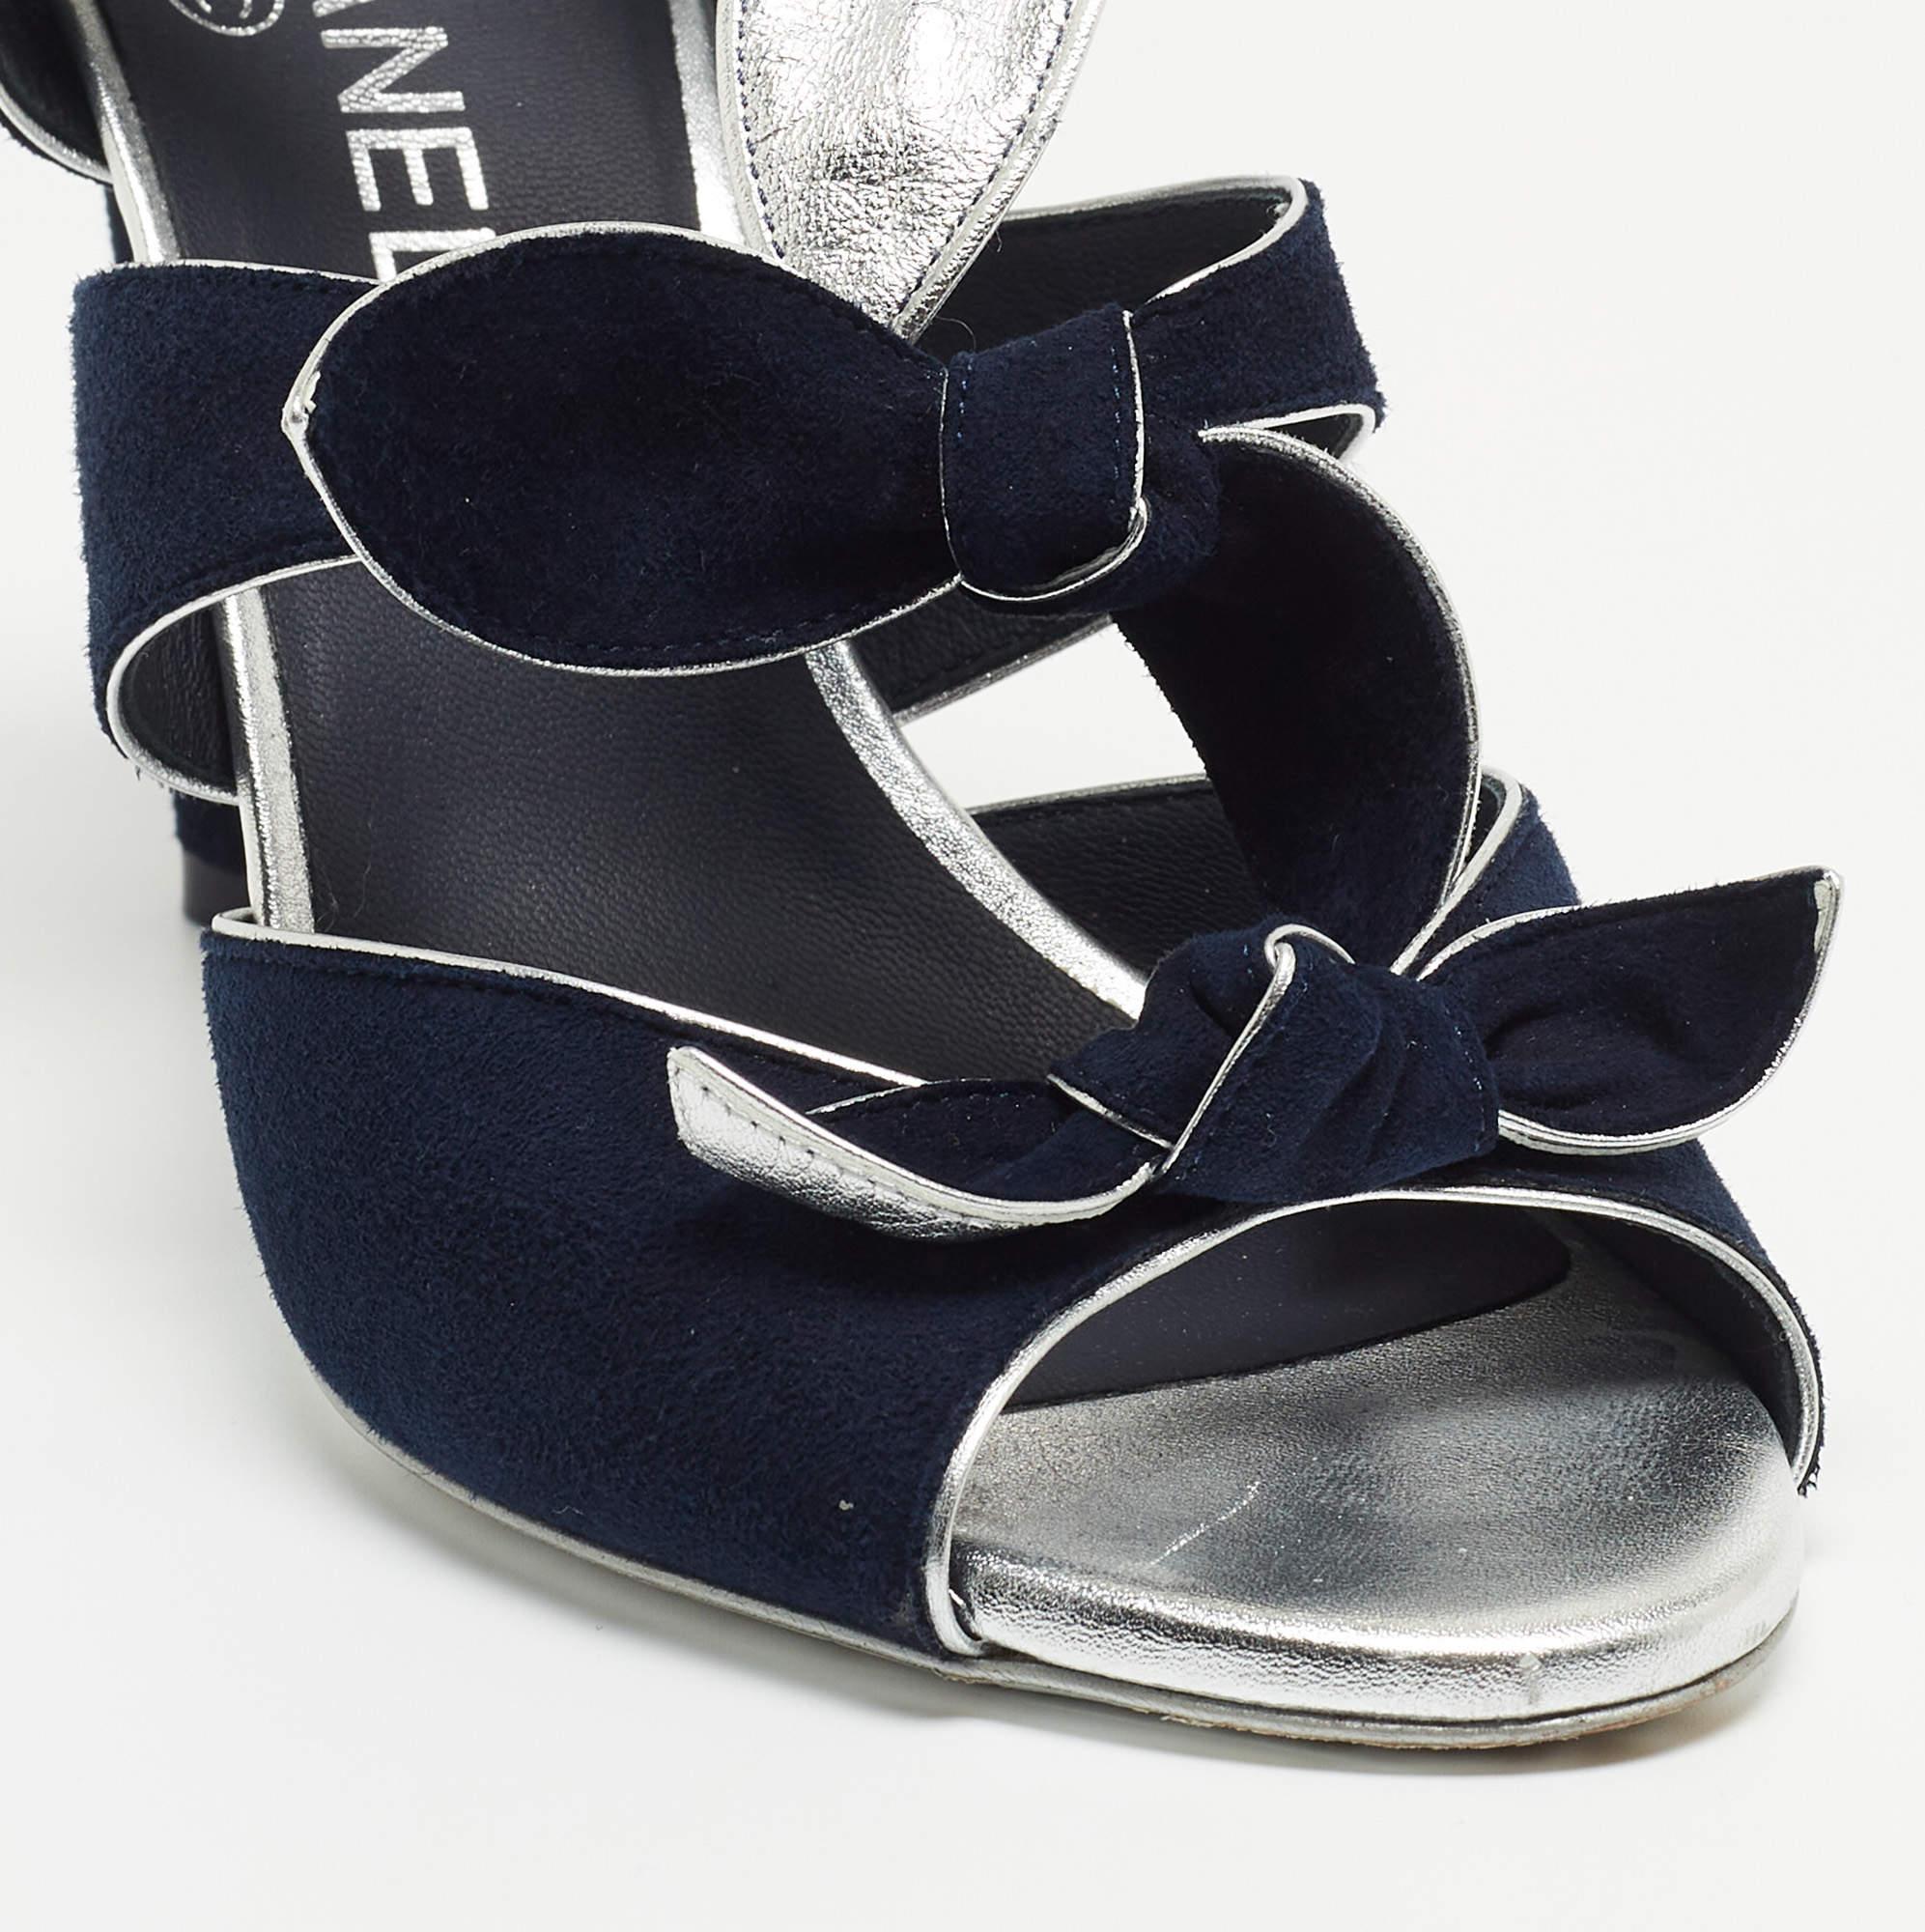 Ces sandales encadreront vos pieds de manière élégante. Fabriquées à partir de matériaux de qualité, elles présentent un design élégant et des semelles intérieures confortables.

Comprend : Sac à poussière original